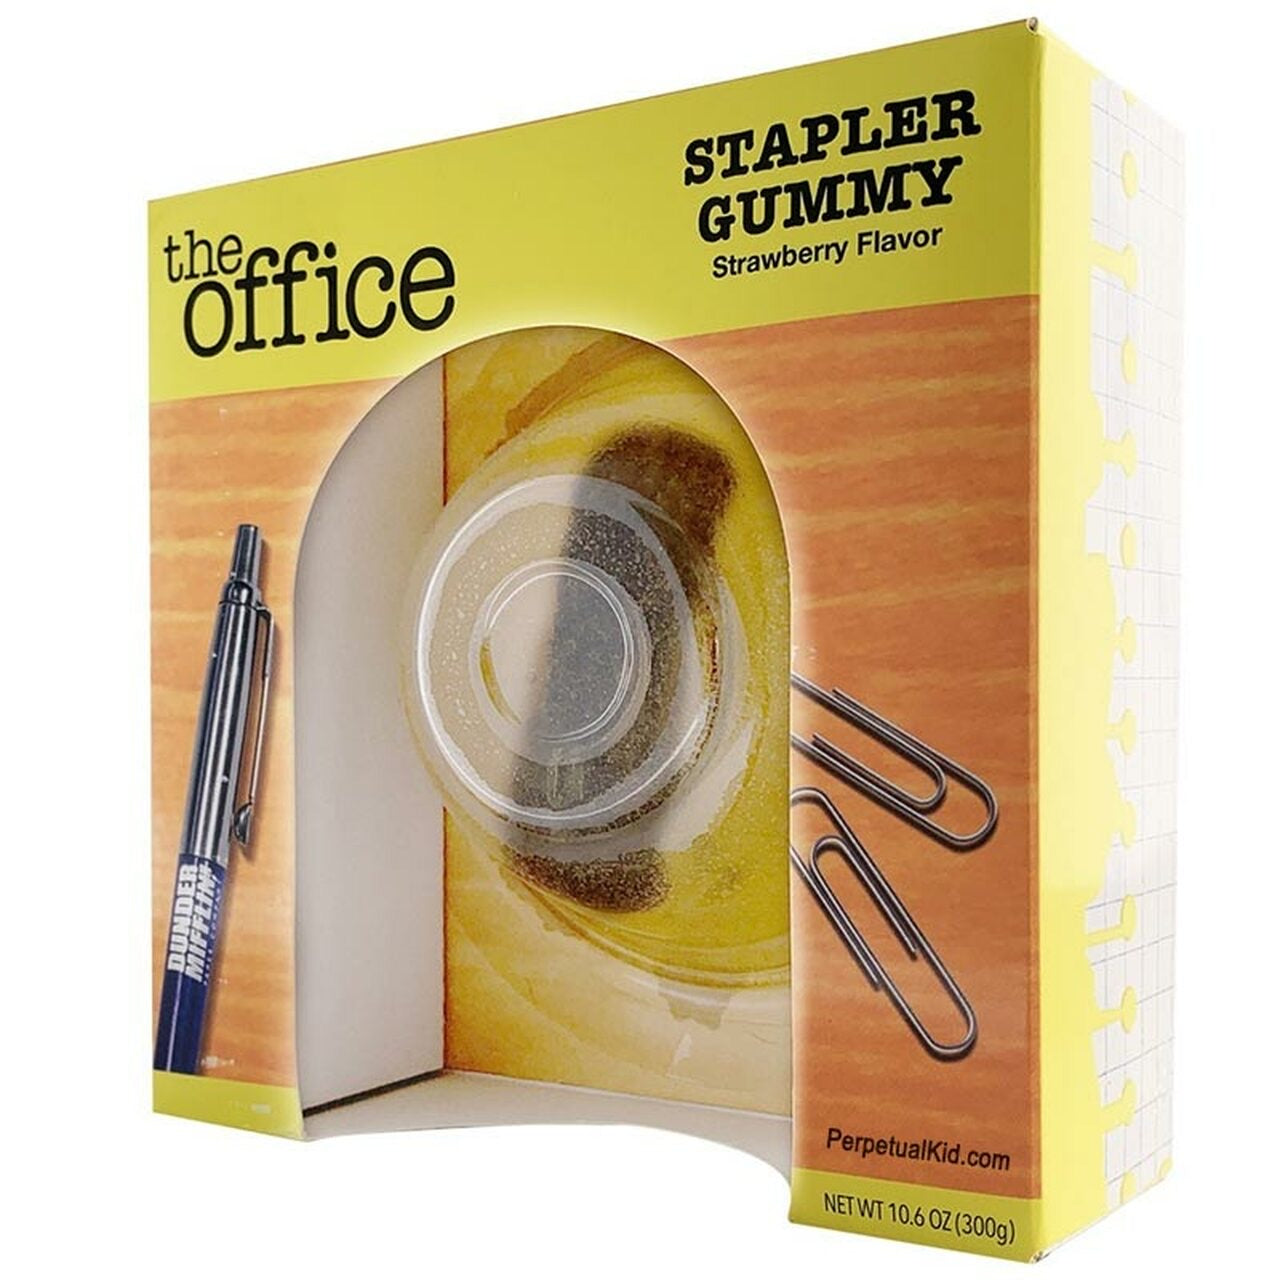 The Office -Stapler Gummy